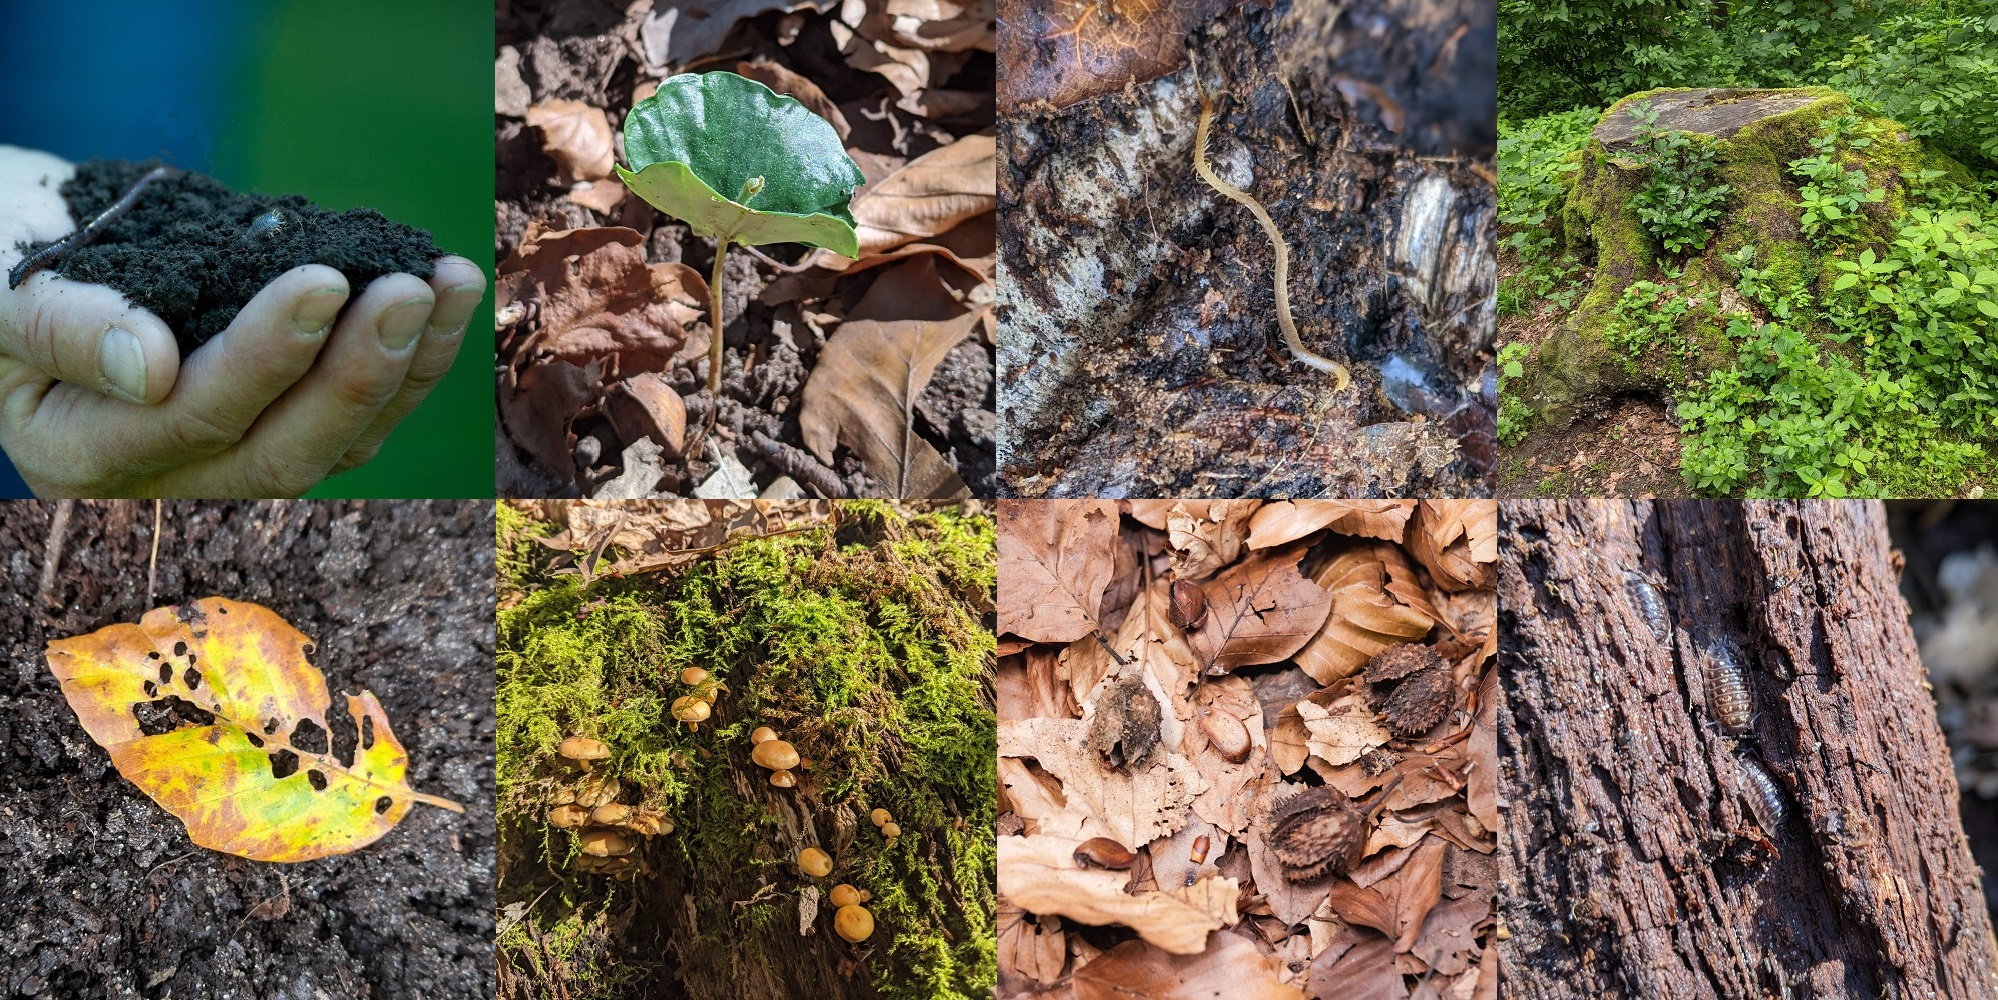 Pilze, Blätter und Würmer als Beispiele für das Leben auf dem Boden und in der Erde